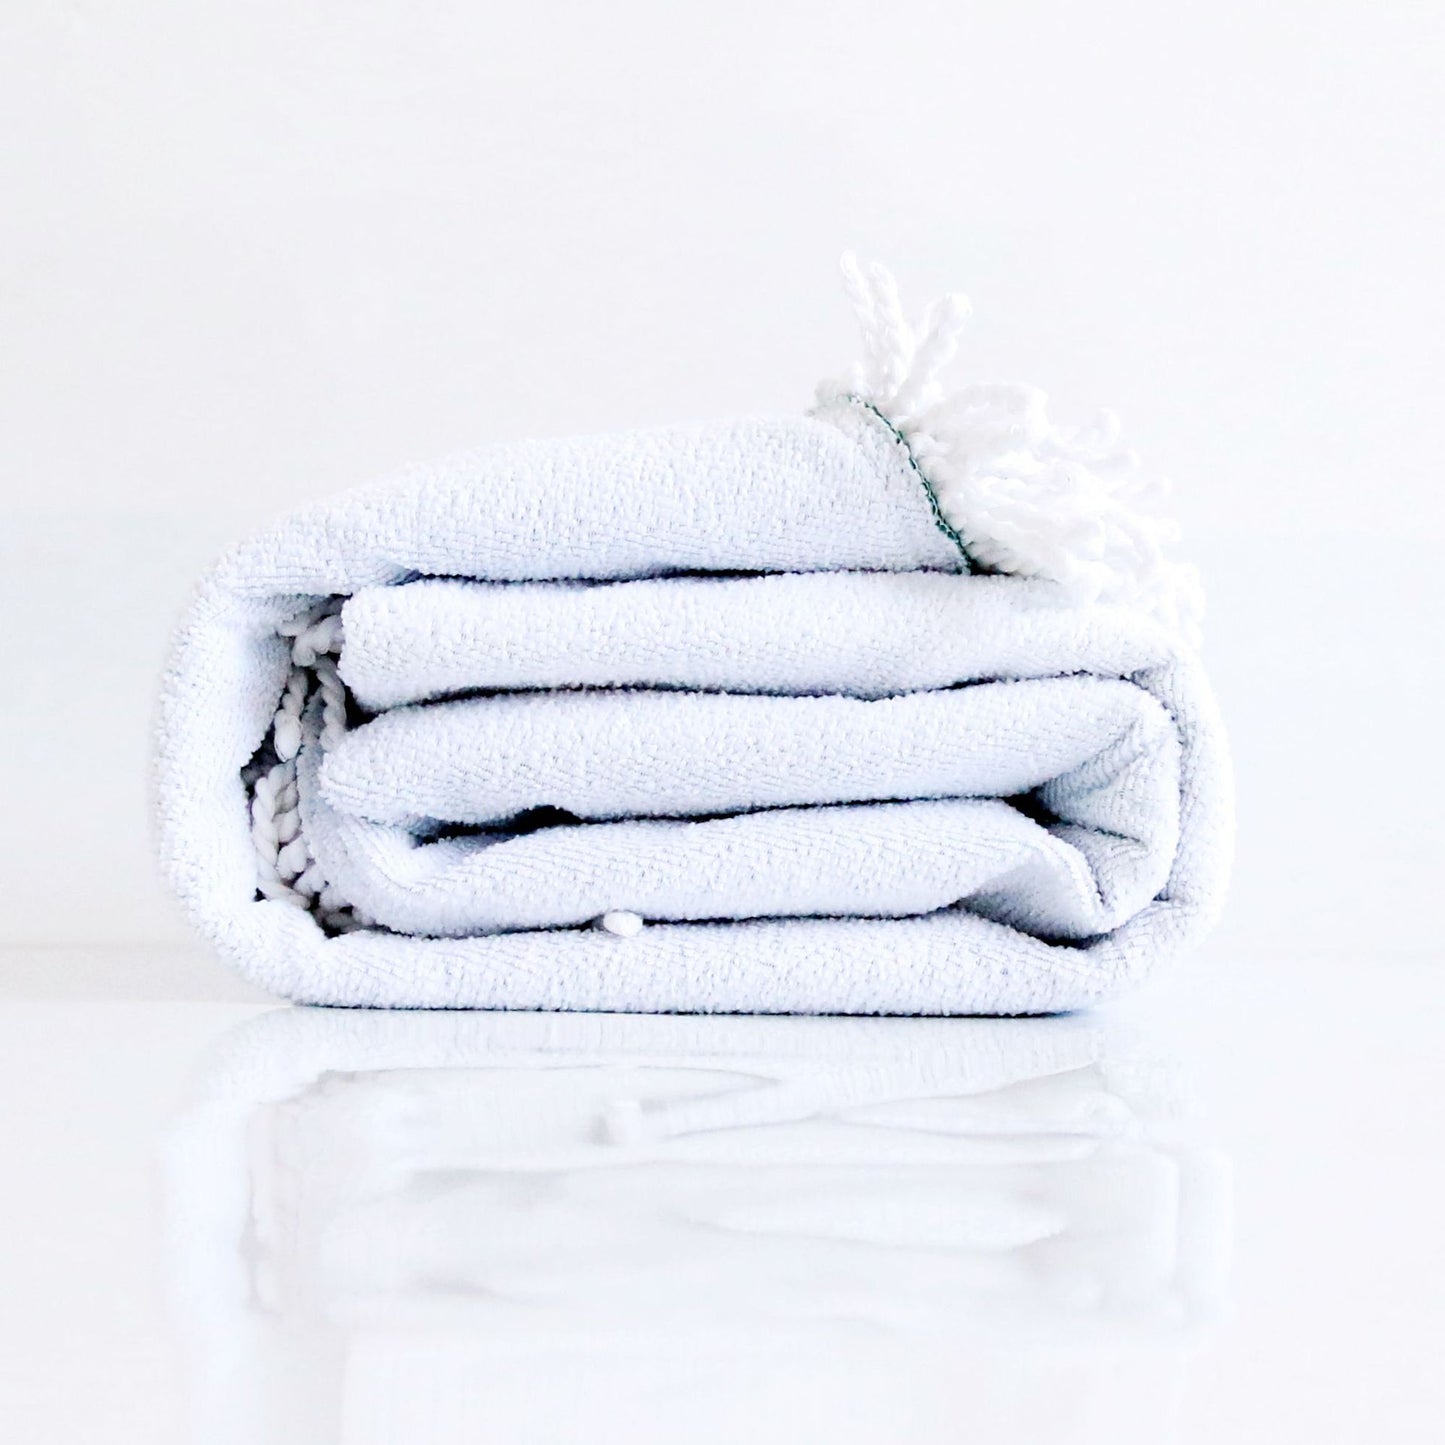 Panda Beach Towels Boho Swimwear Bathing  Blanket